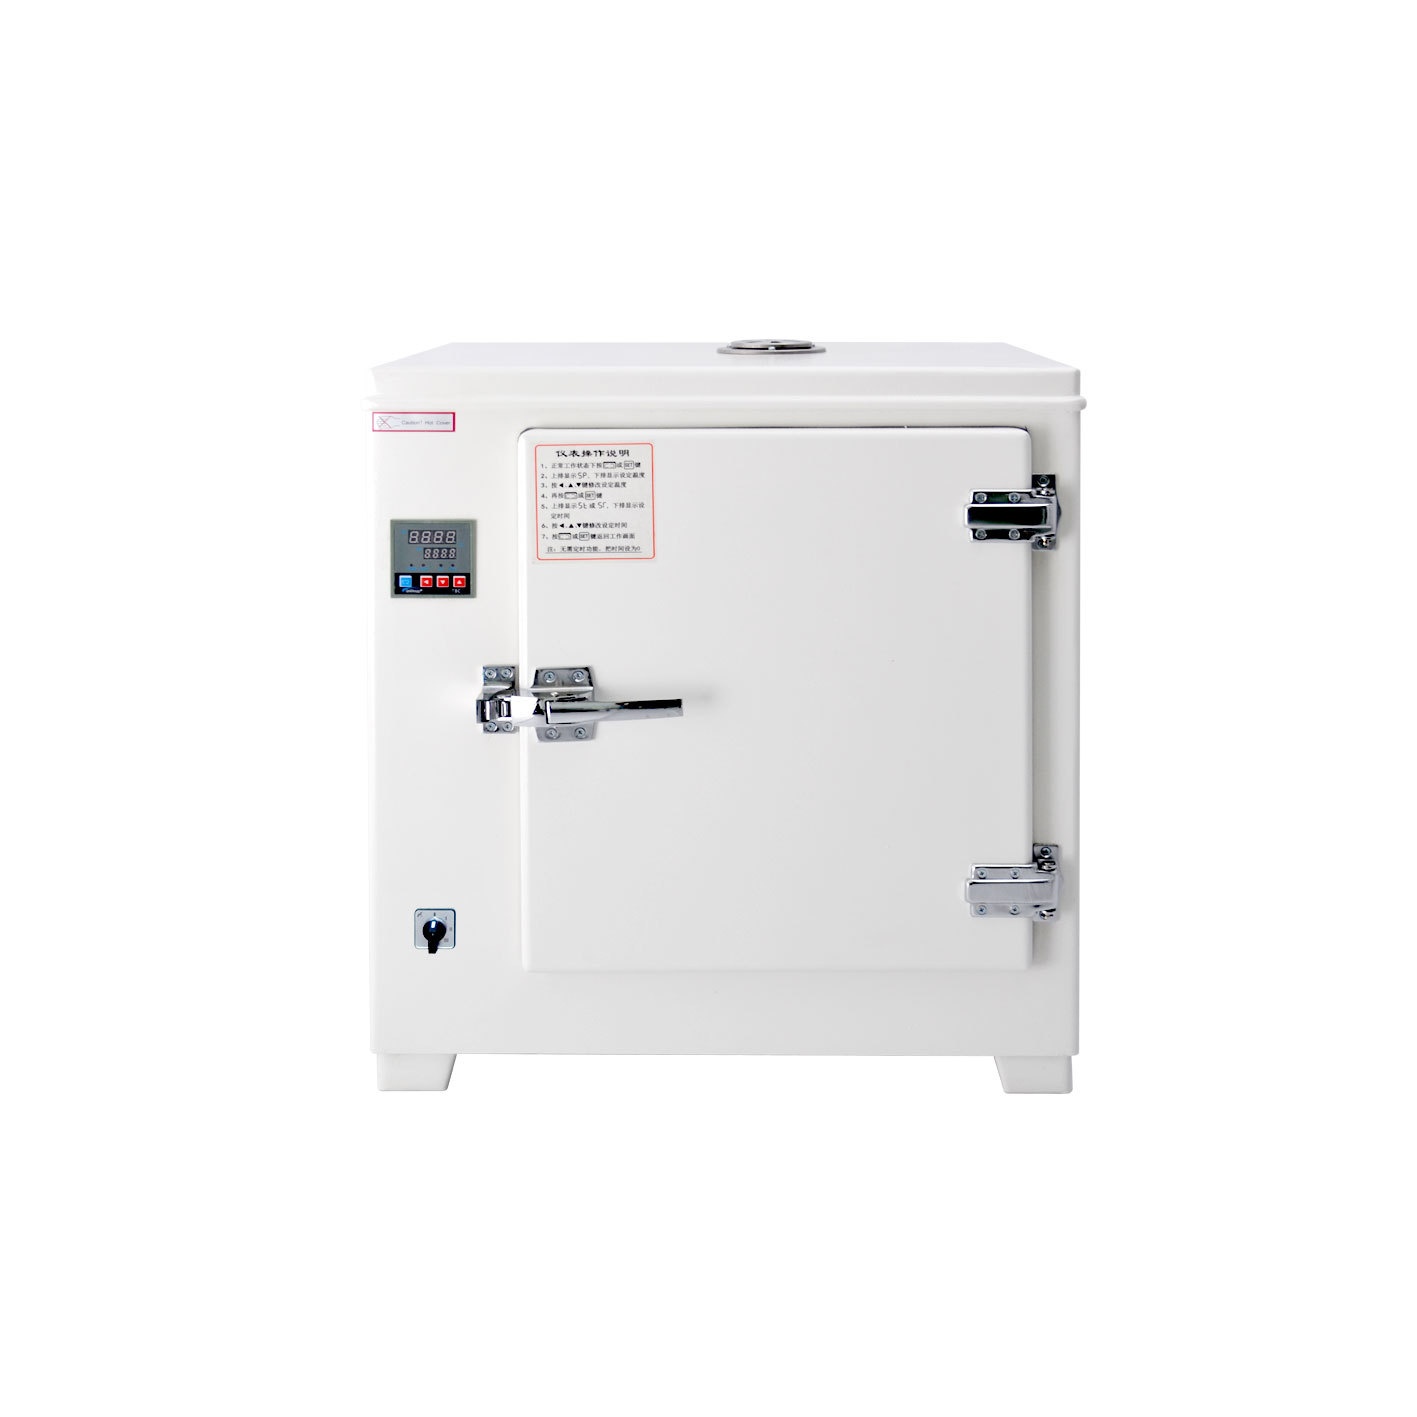 HGZN-20电热恒温干燥箱的图片